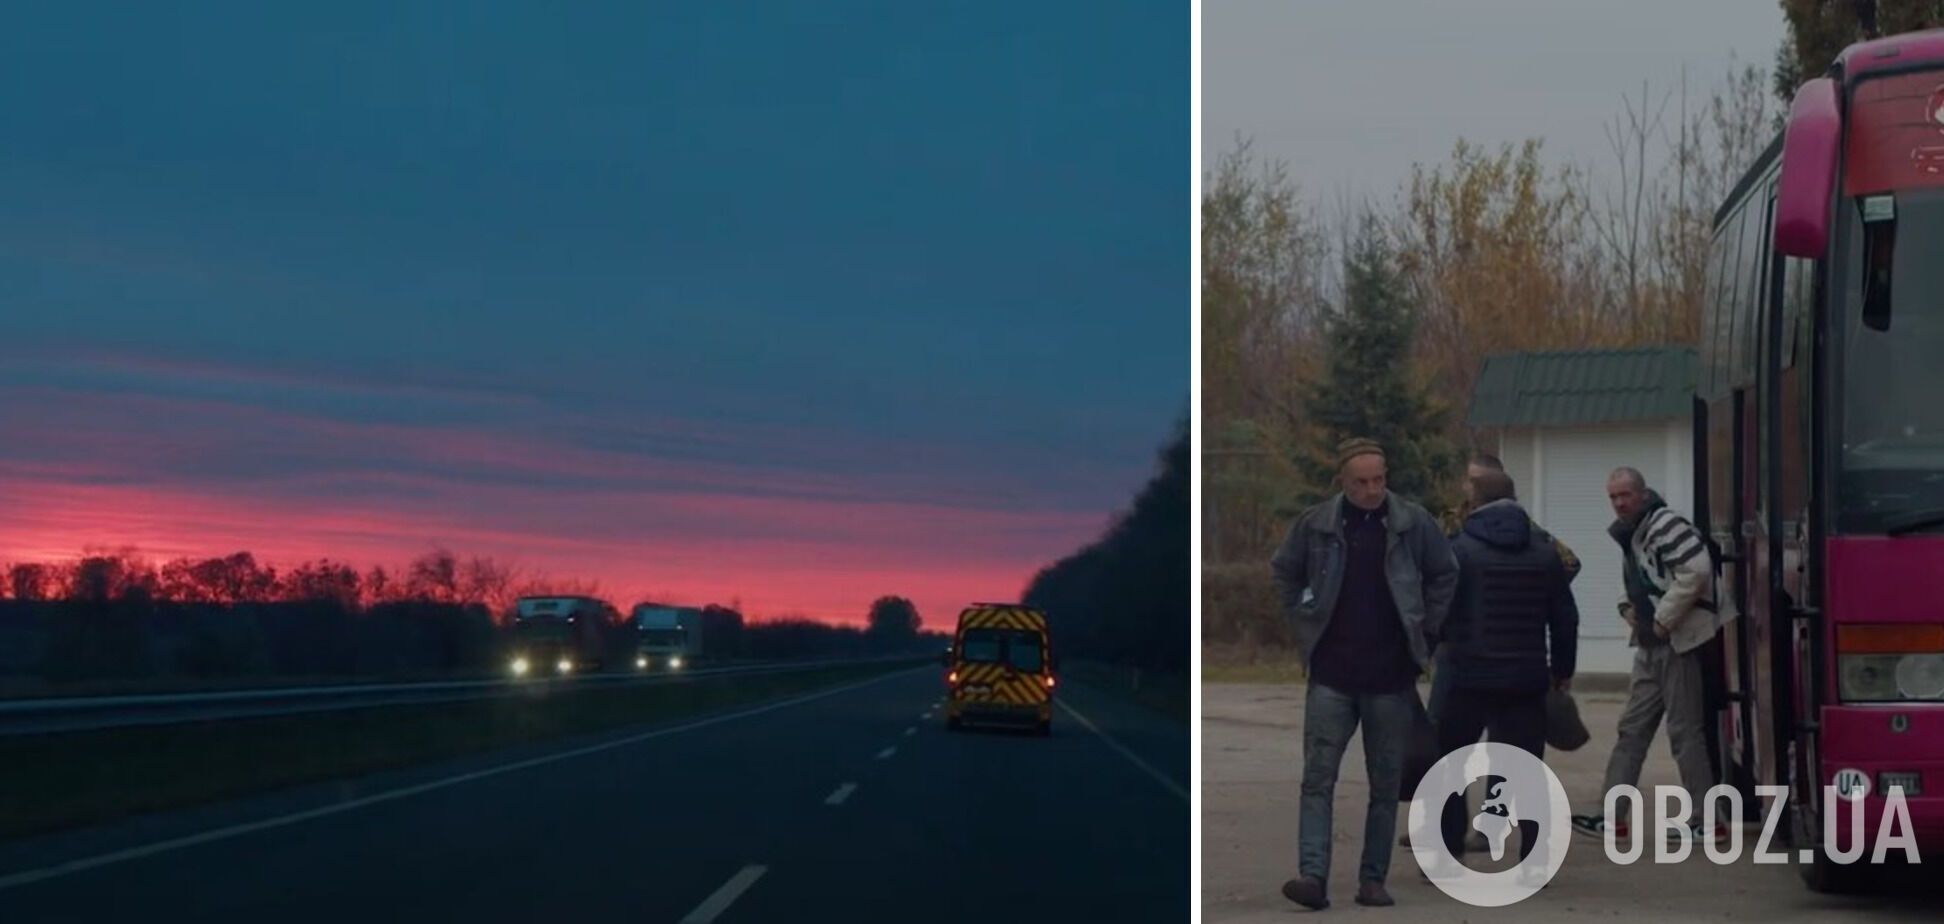 ''Сонце, я вдома'': у мережі показали зворушливі кадри повернення з полону українських прикордонників. Відео 